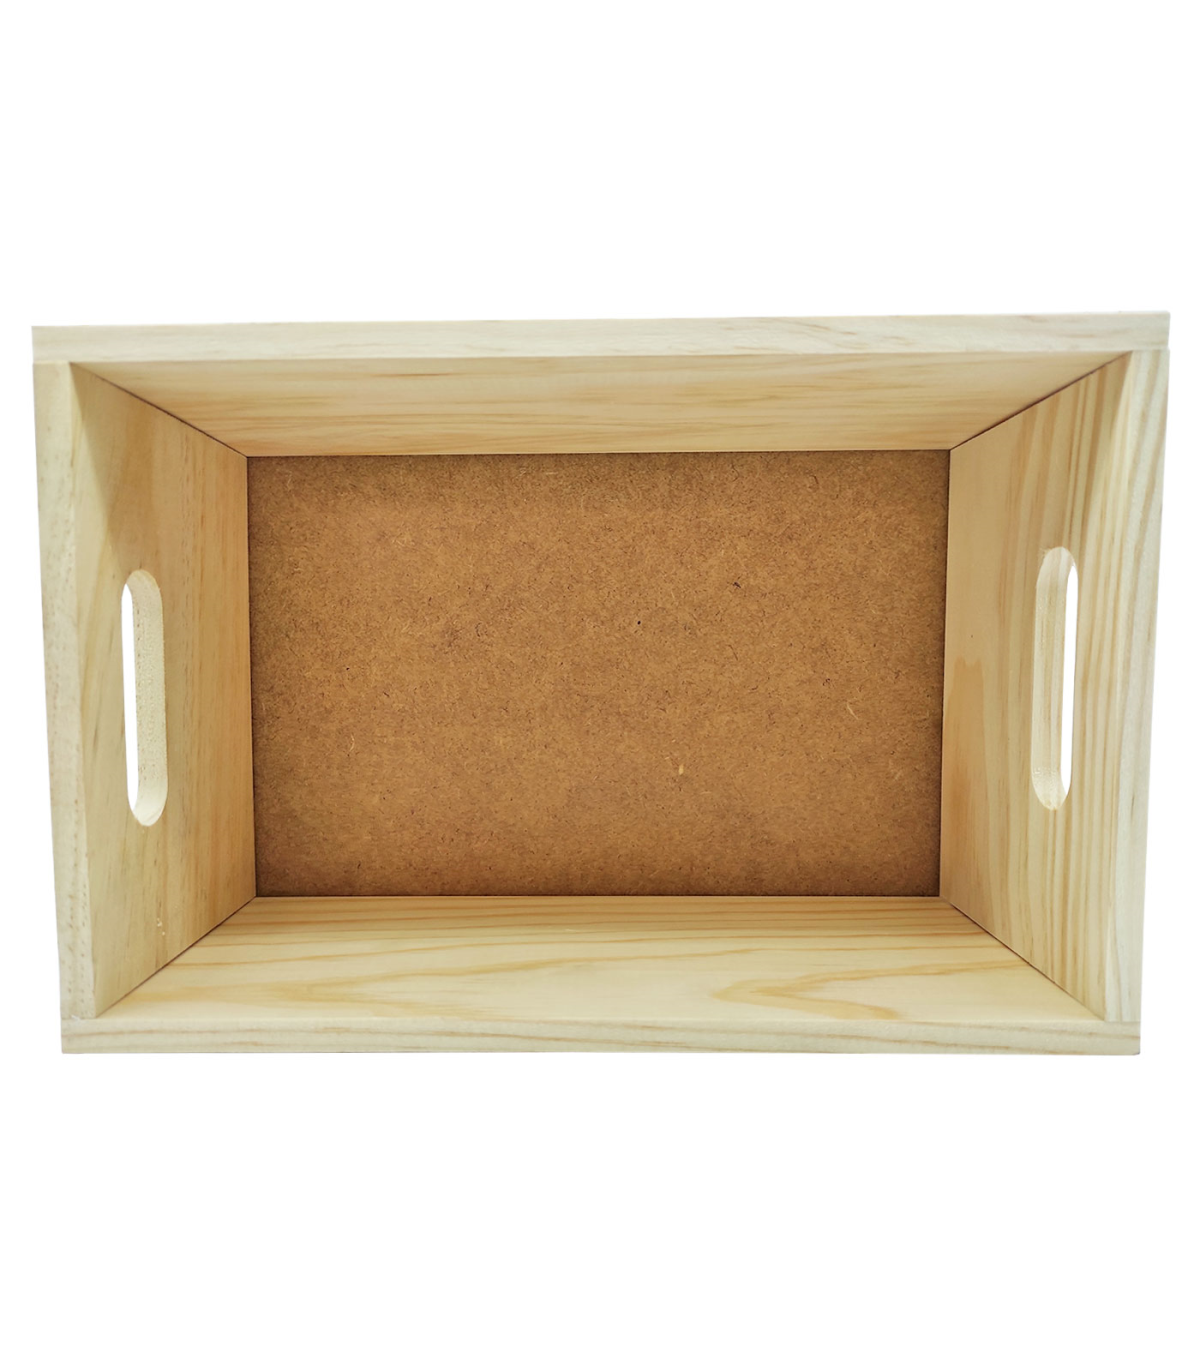  Paquete de 2 cajas de madera para manualidades con asa,  bandejas de madera en blanco, almacenamiento cuadrado para decoraciones de  manualidades (exterior 8.7 x 8.7 x 2 pulgadas, interior 8 x